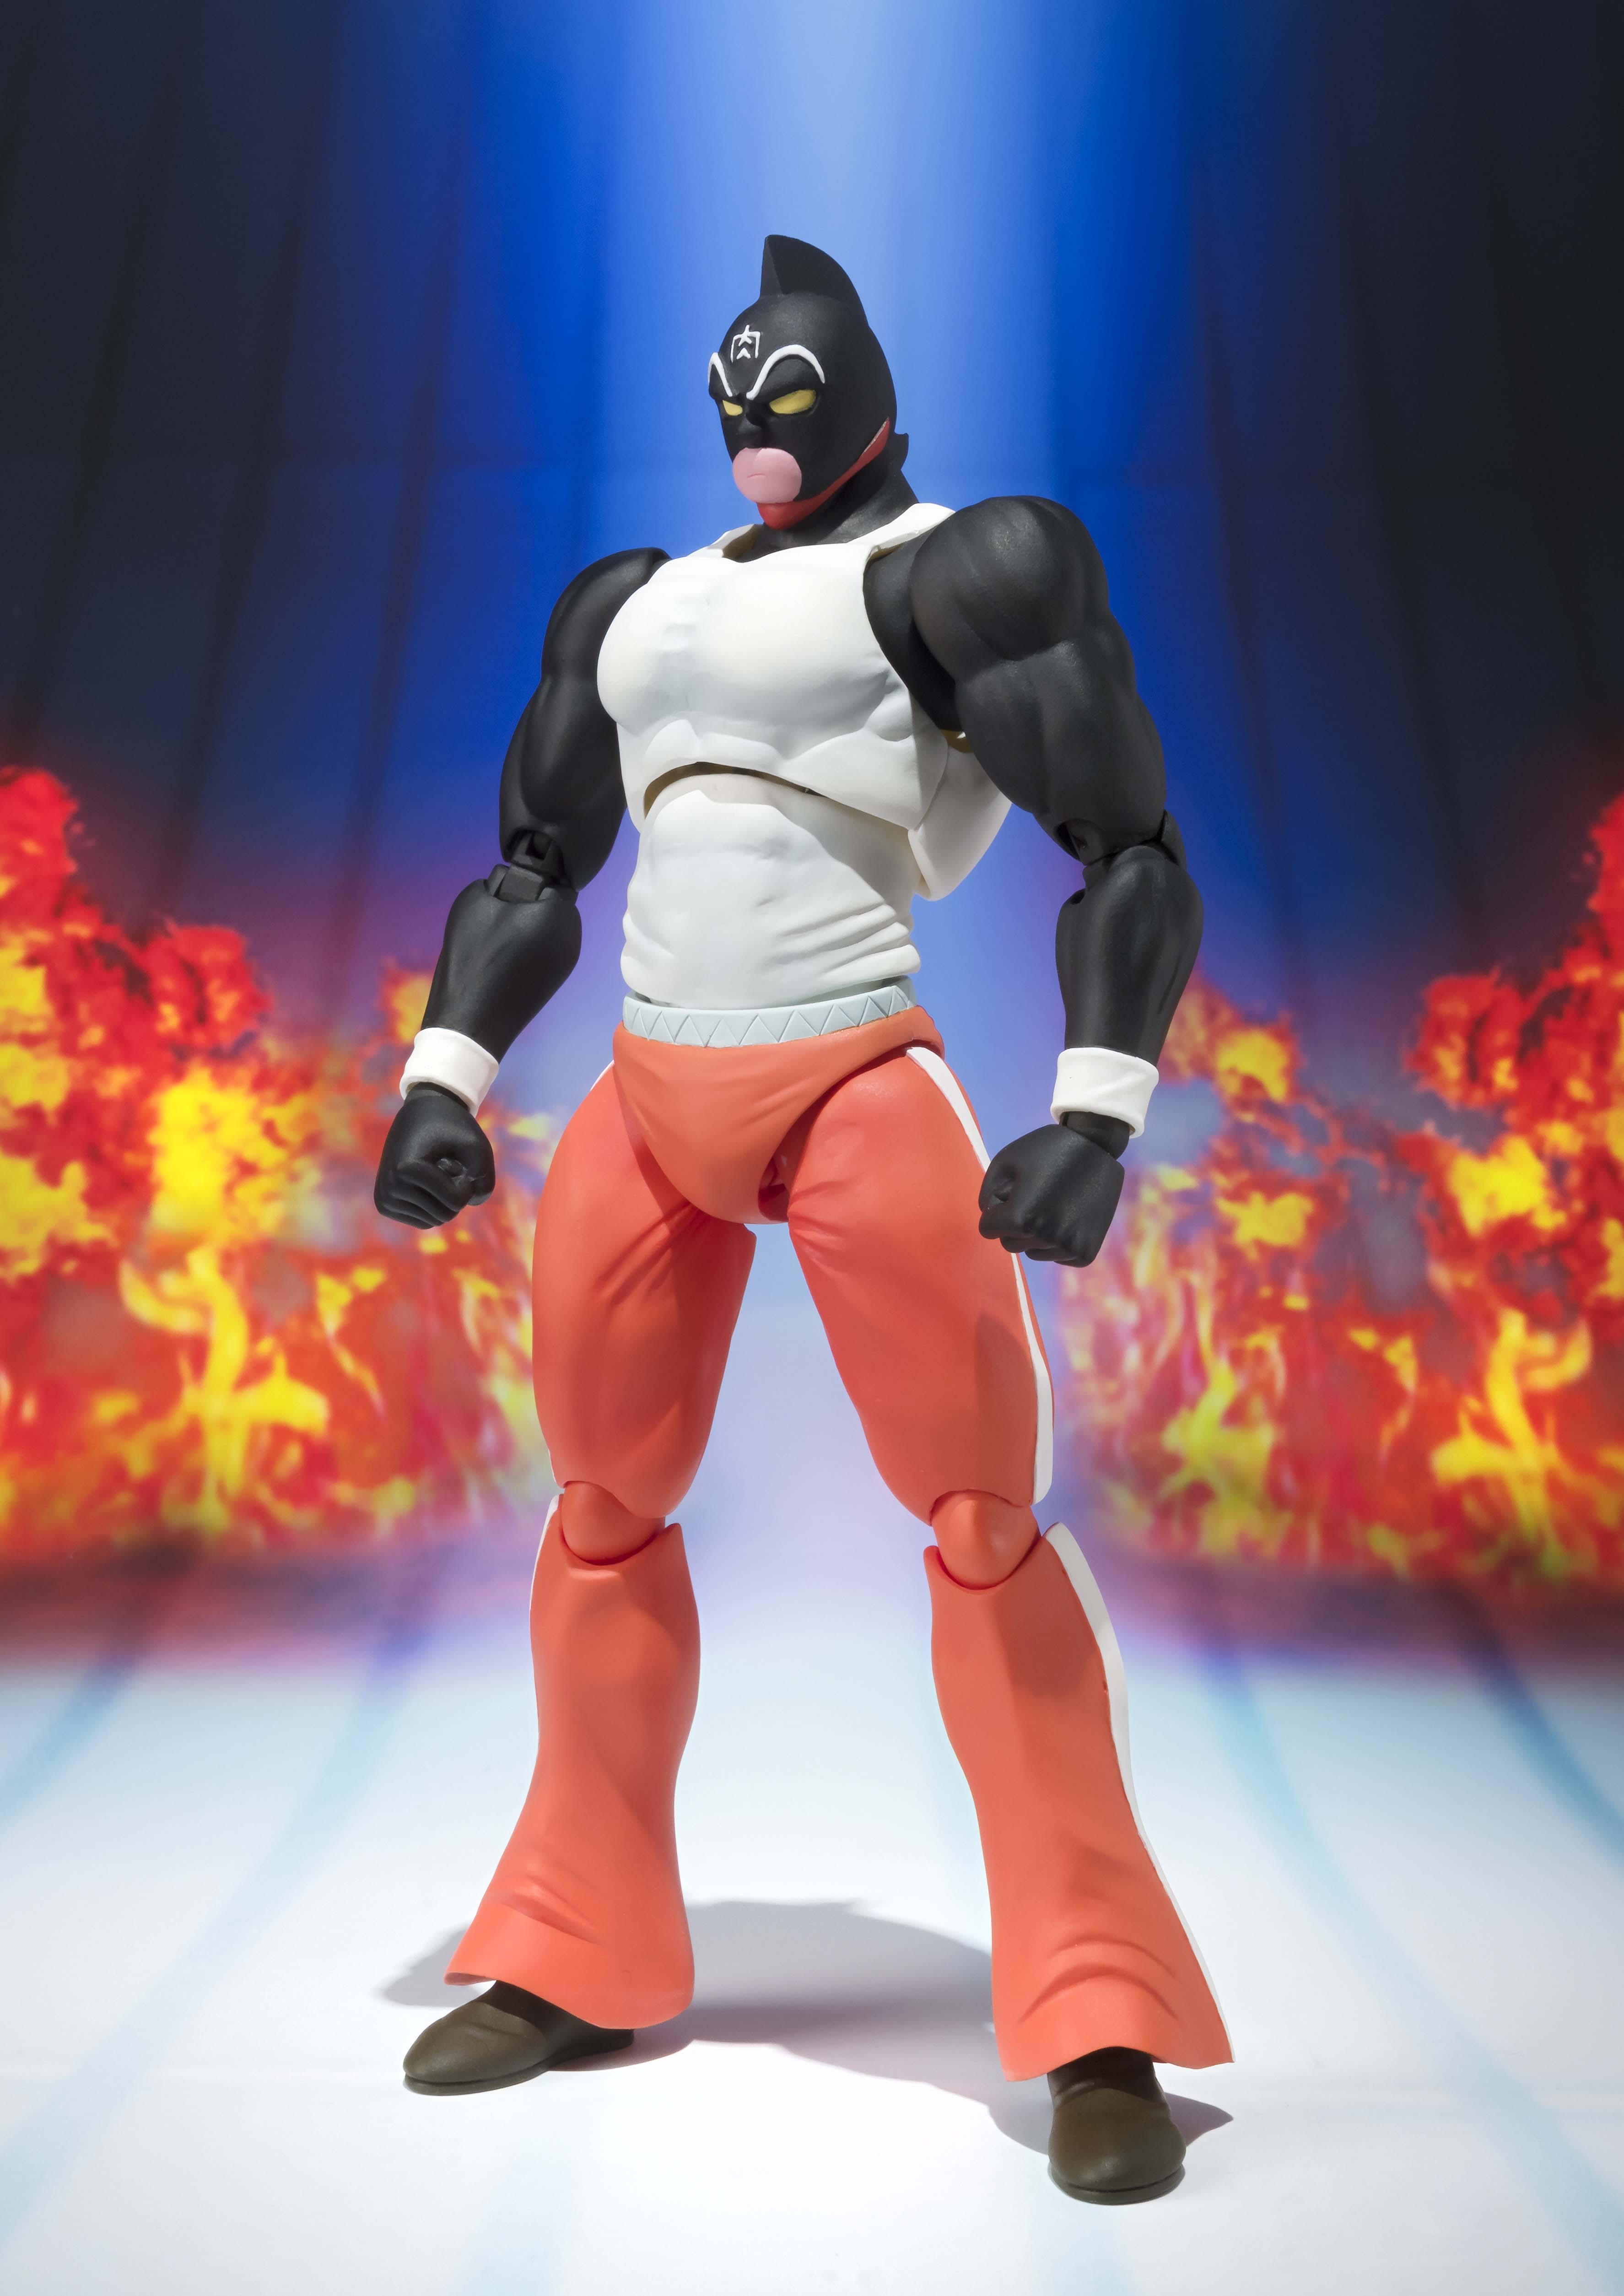 テリーマン扮する「キン肉マングレート」と完璧超人「ビッグ・ザ・武道